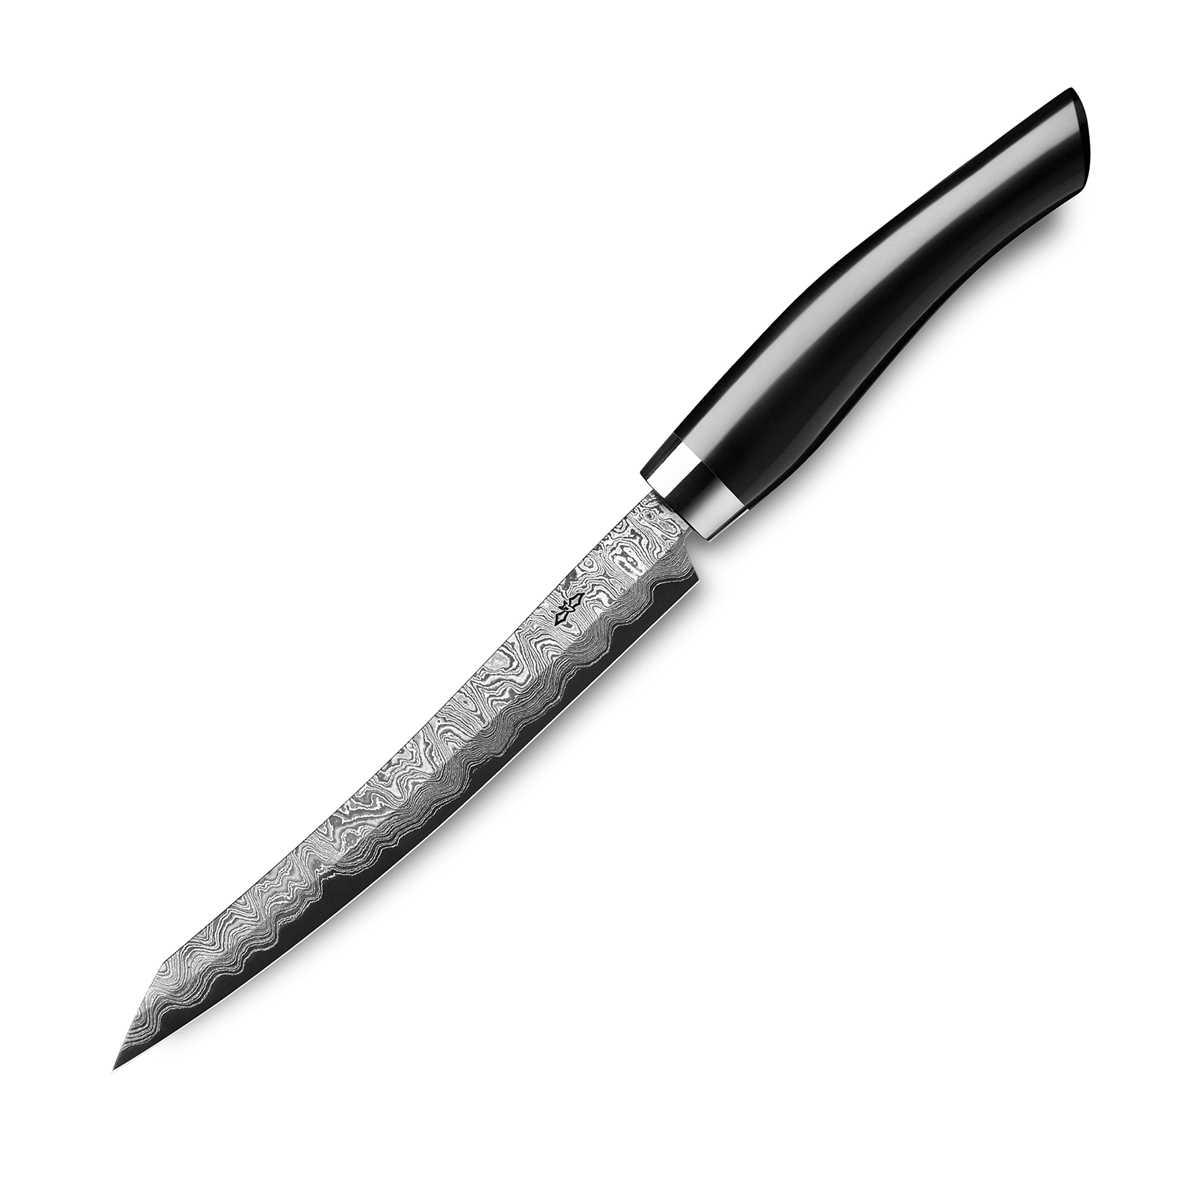 Nesmuk Exklusiv C150 Damast Slicer 16 cm mit Schneidlage / Griff aus Juma Black